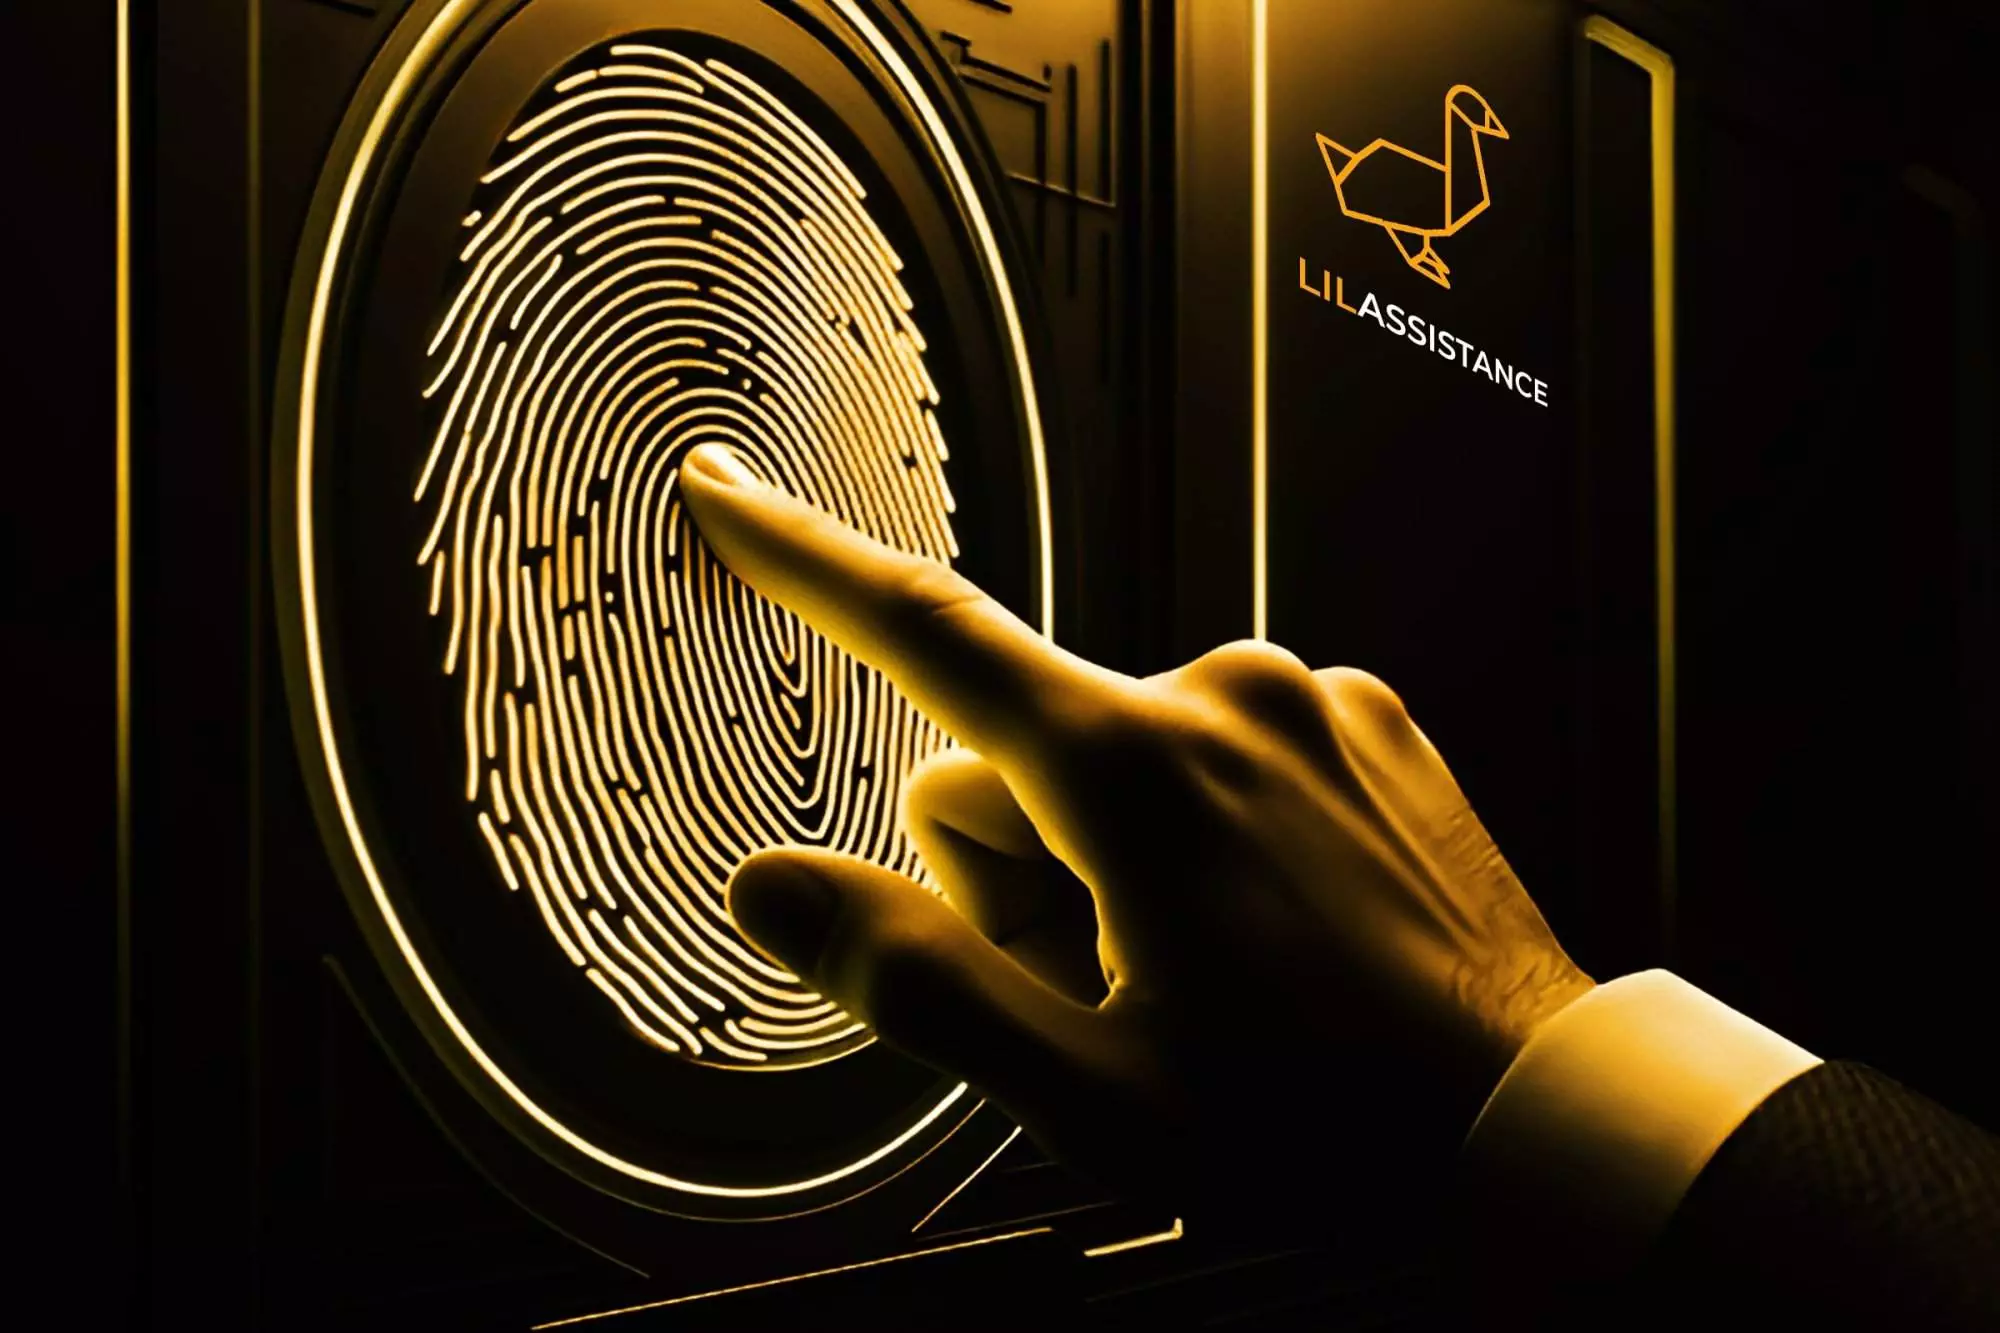 Close-up of a finger tapping a golden fingerprint scanner, symbolizing secure business registration.